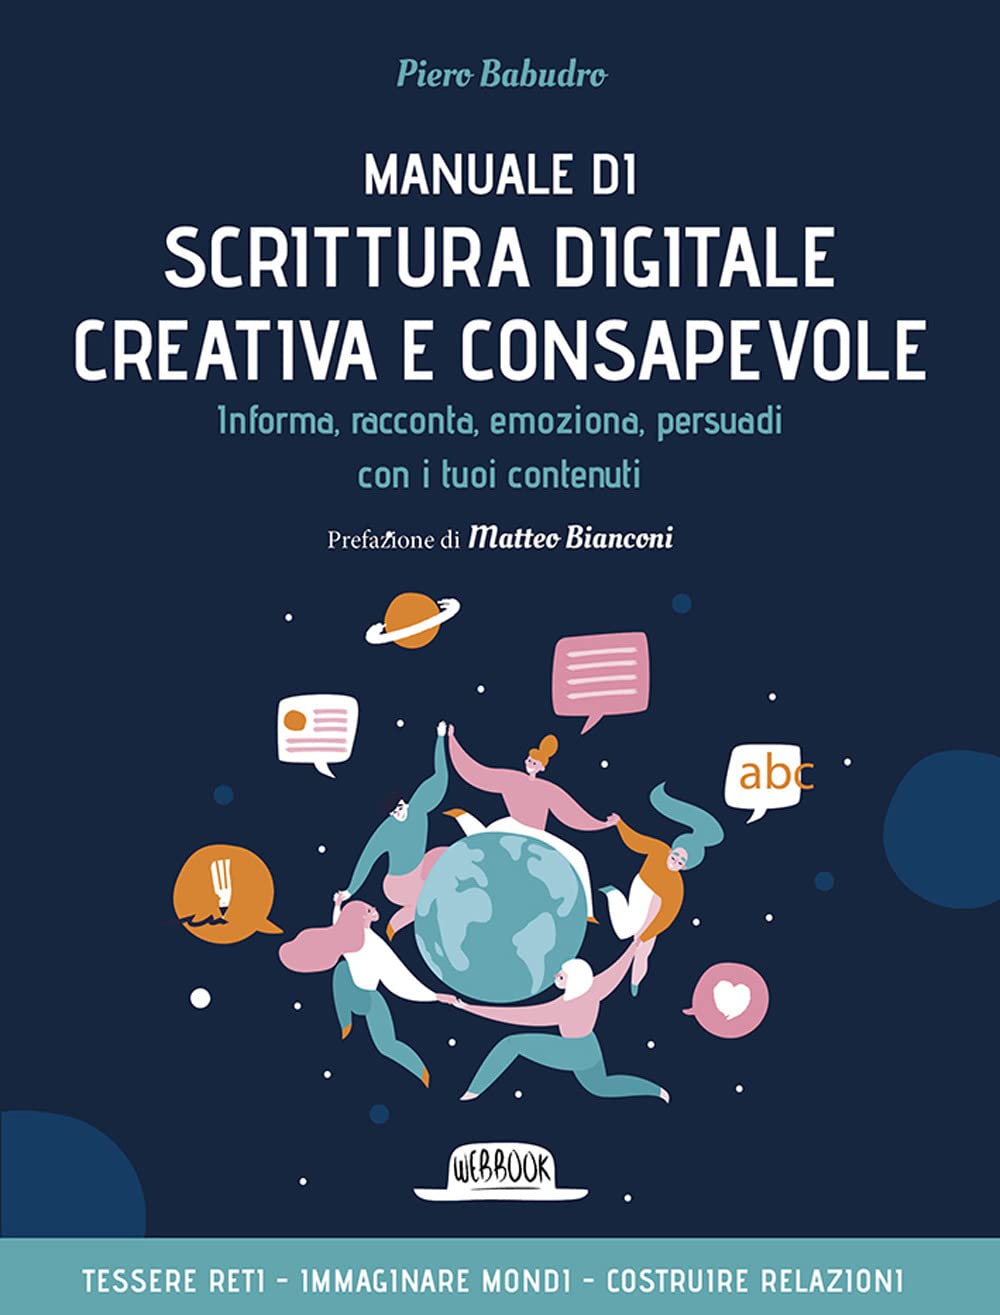 Manuale Di Scrittura Digitale Creativa e Consapevole di P. Babudro – Recensione